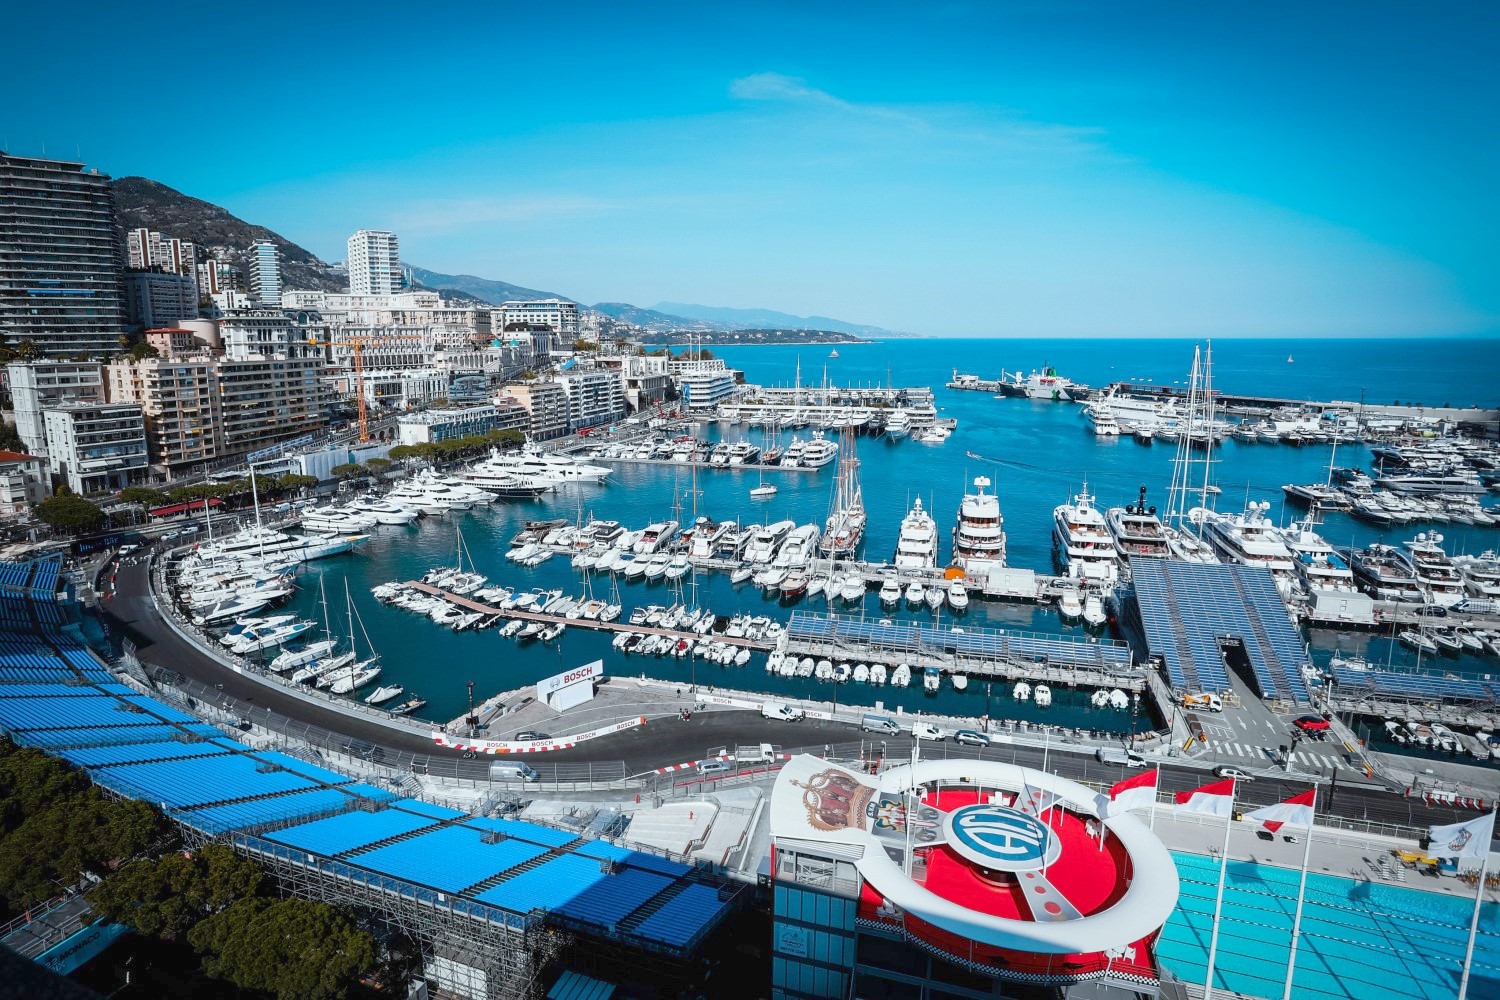 Monaco GP Circuit